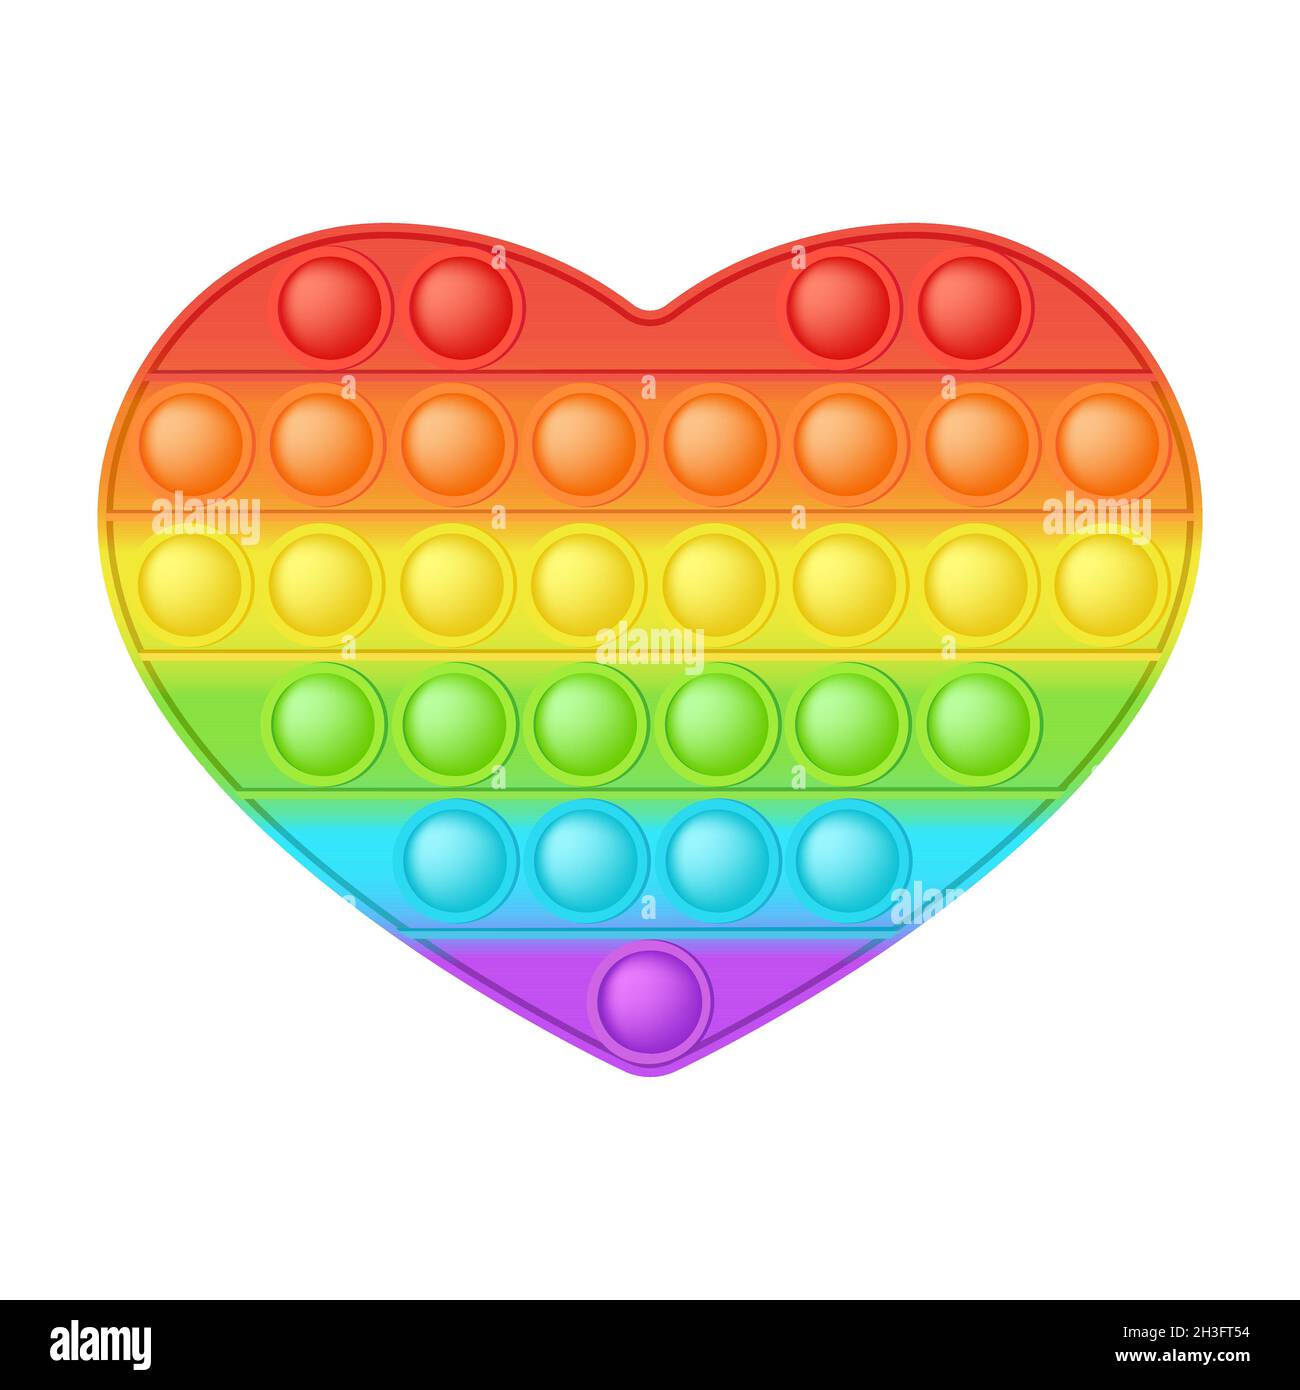 POPIT figura el corazón como un moderno juguete de silicona para los  fidgets. Adictivo juguete antiestrés en colores de arco iris brillante.  Ansiedad de burbuja en desarrollo pop que juguetes Imagen Vector